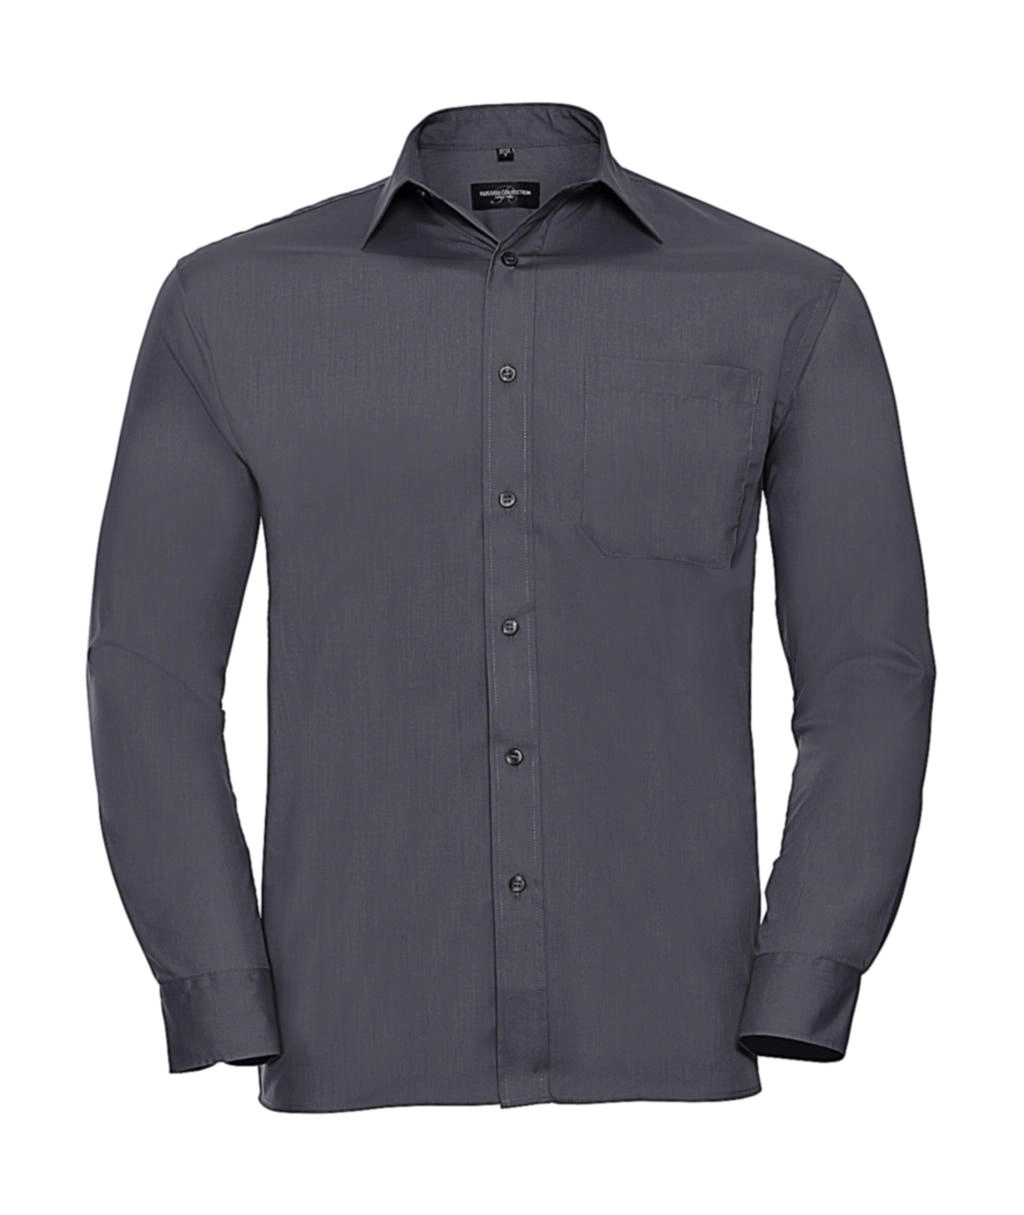 Poplin Shirt LS zum Besticken und Bedrucken in der Farbe Convoy Grey mit Ihren Logo, Schriftzug oder Motiv.